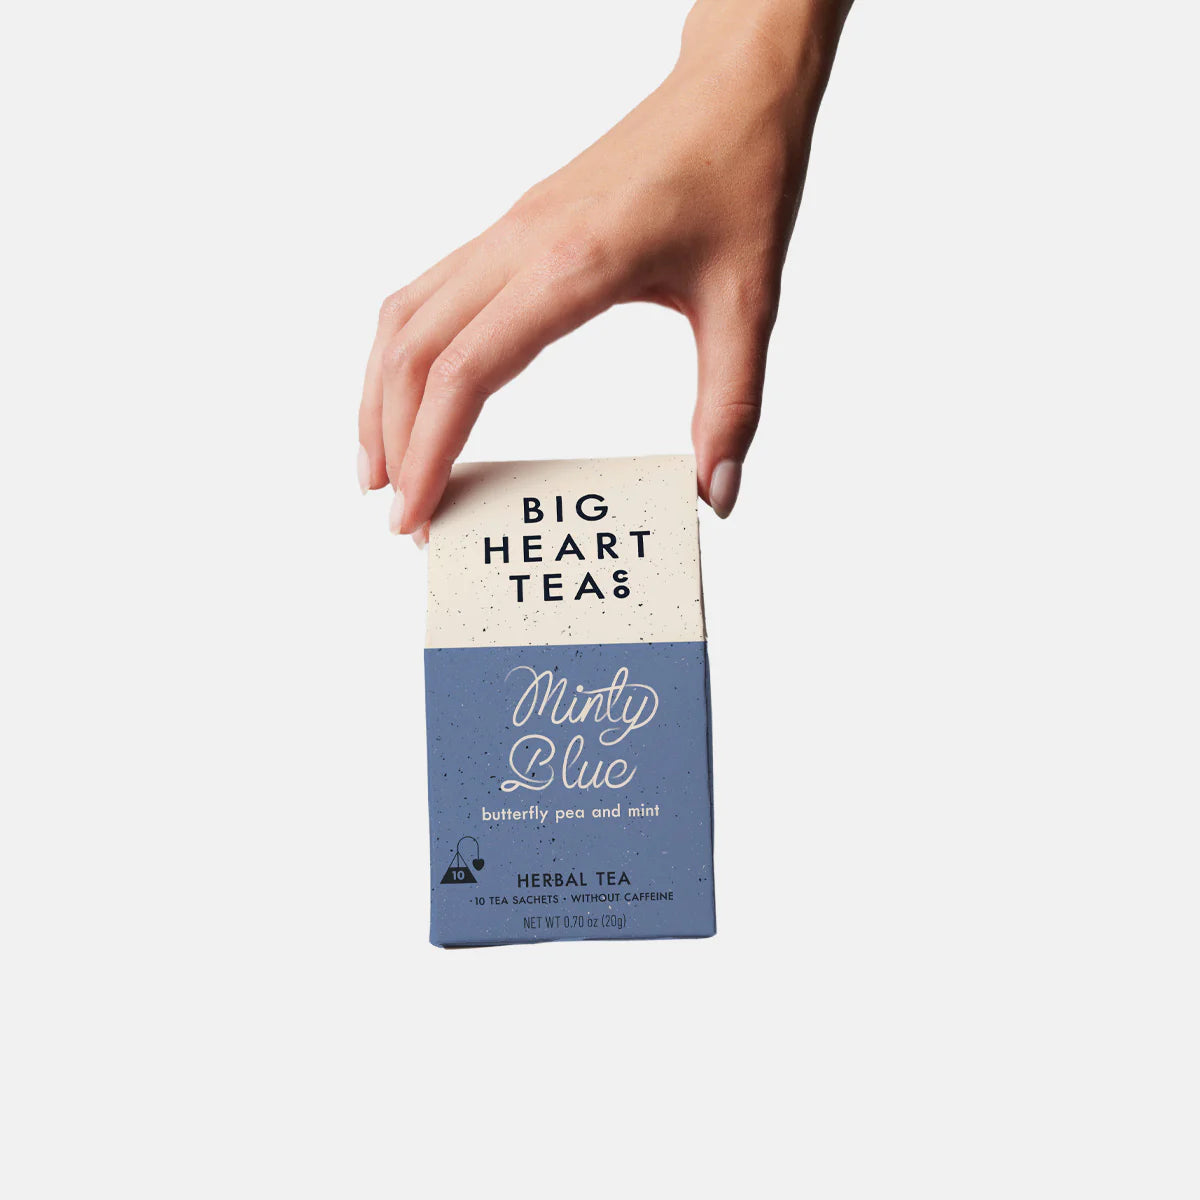 Hand holds Minty Blue Tea.